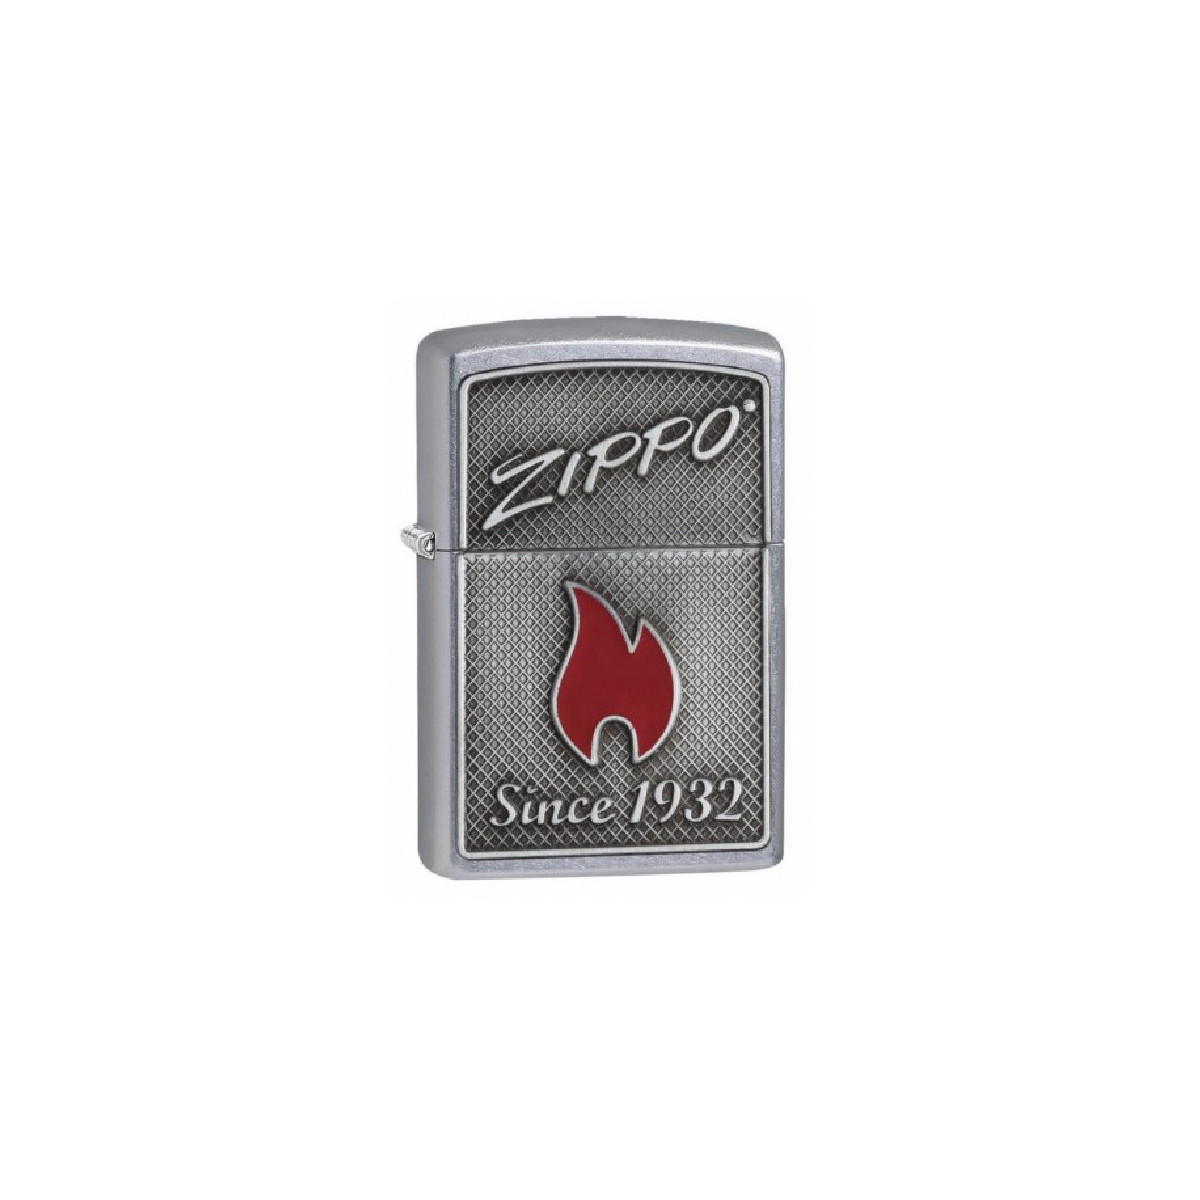 Encendedor Zippo and Flame - 29650